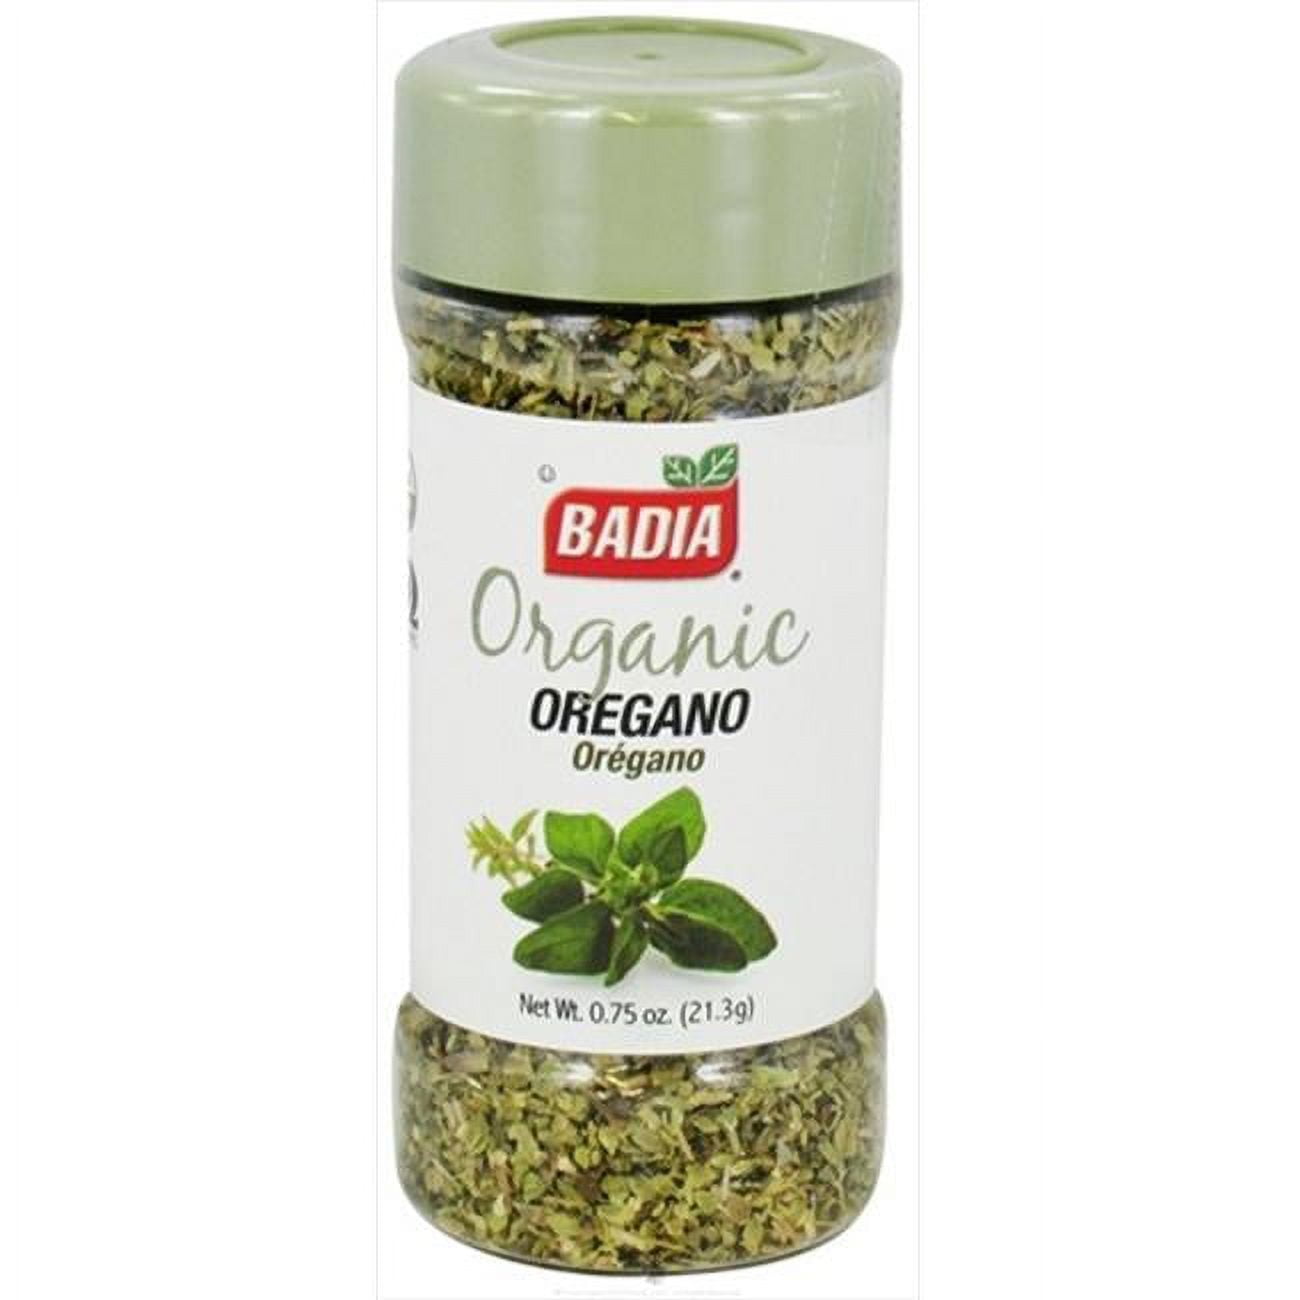 Badia Organic Oregano 0.75 oz Shaker